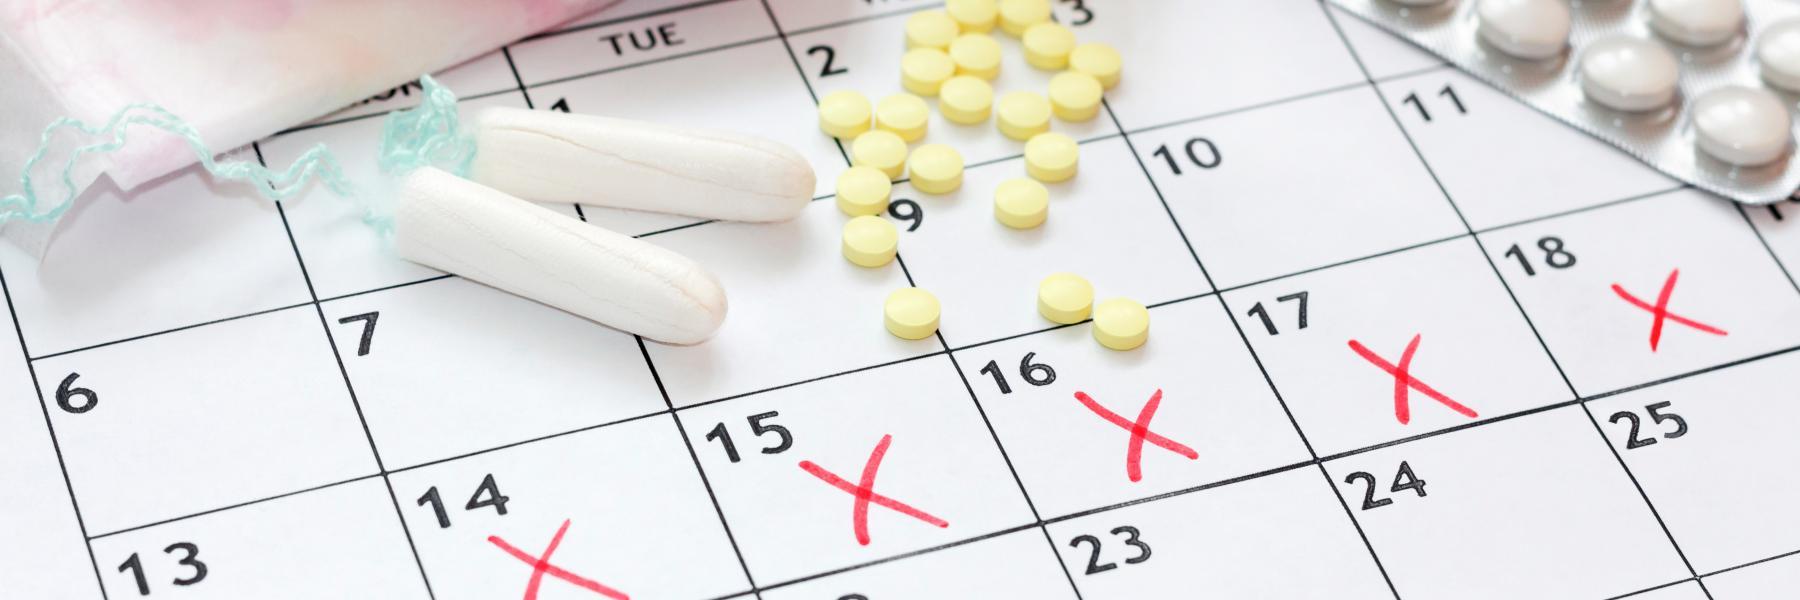 هل تناول المضادات الحيوية يؤخر دورتك الشهرية؟ إليكِ الإجابة